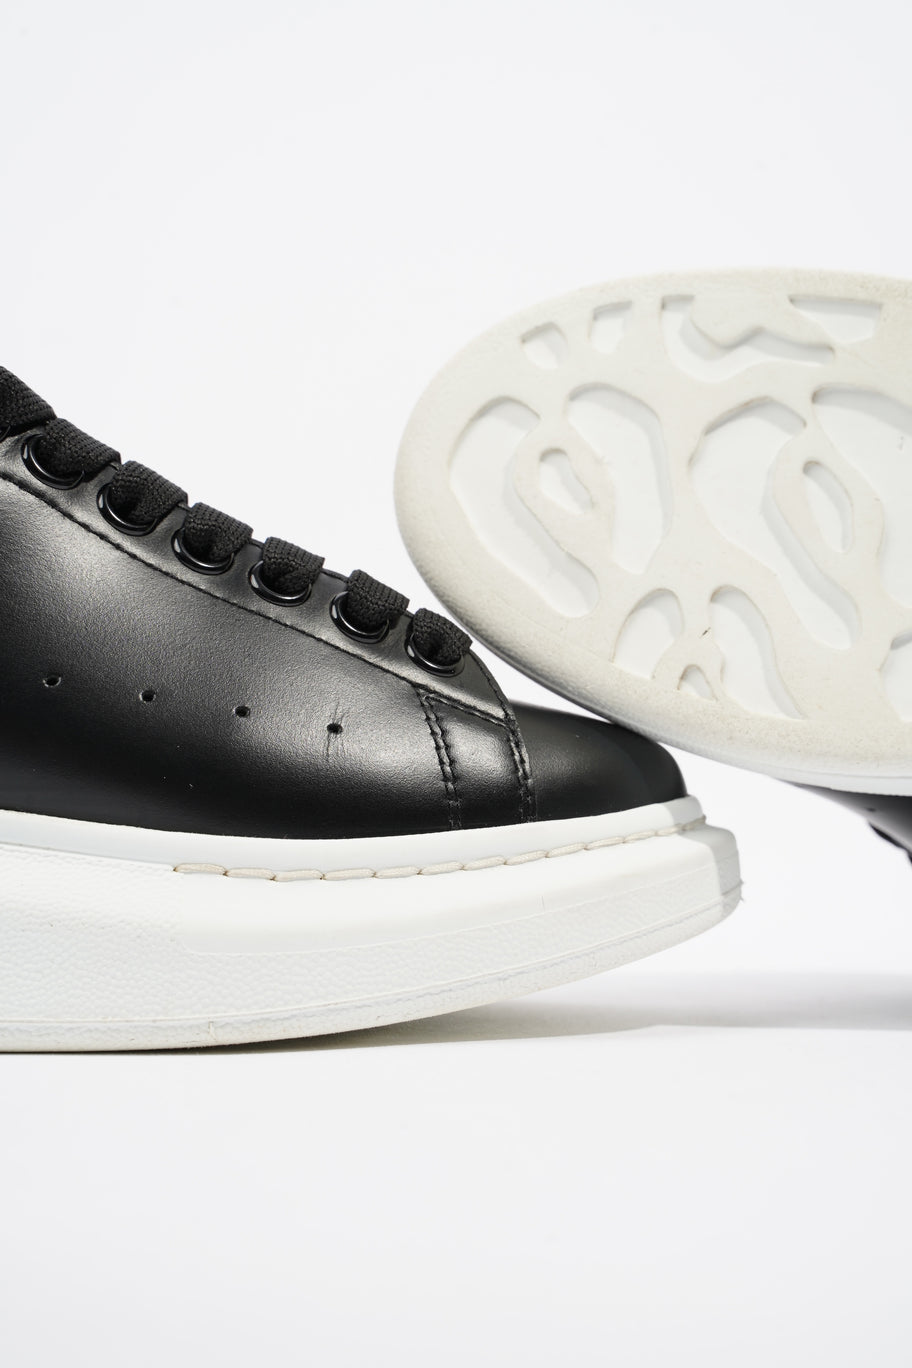 Oversized Sneaker Black / White Leather EU 36.5 UK 3.5 Image 8